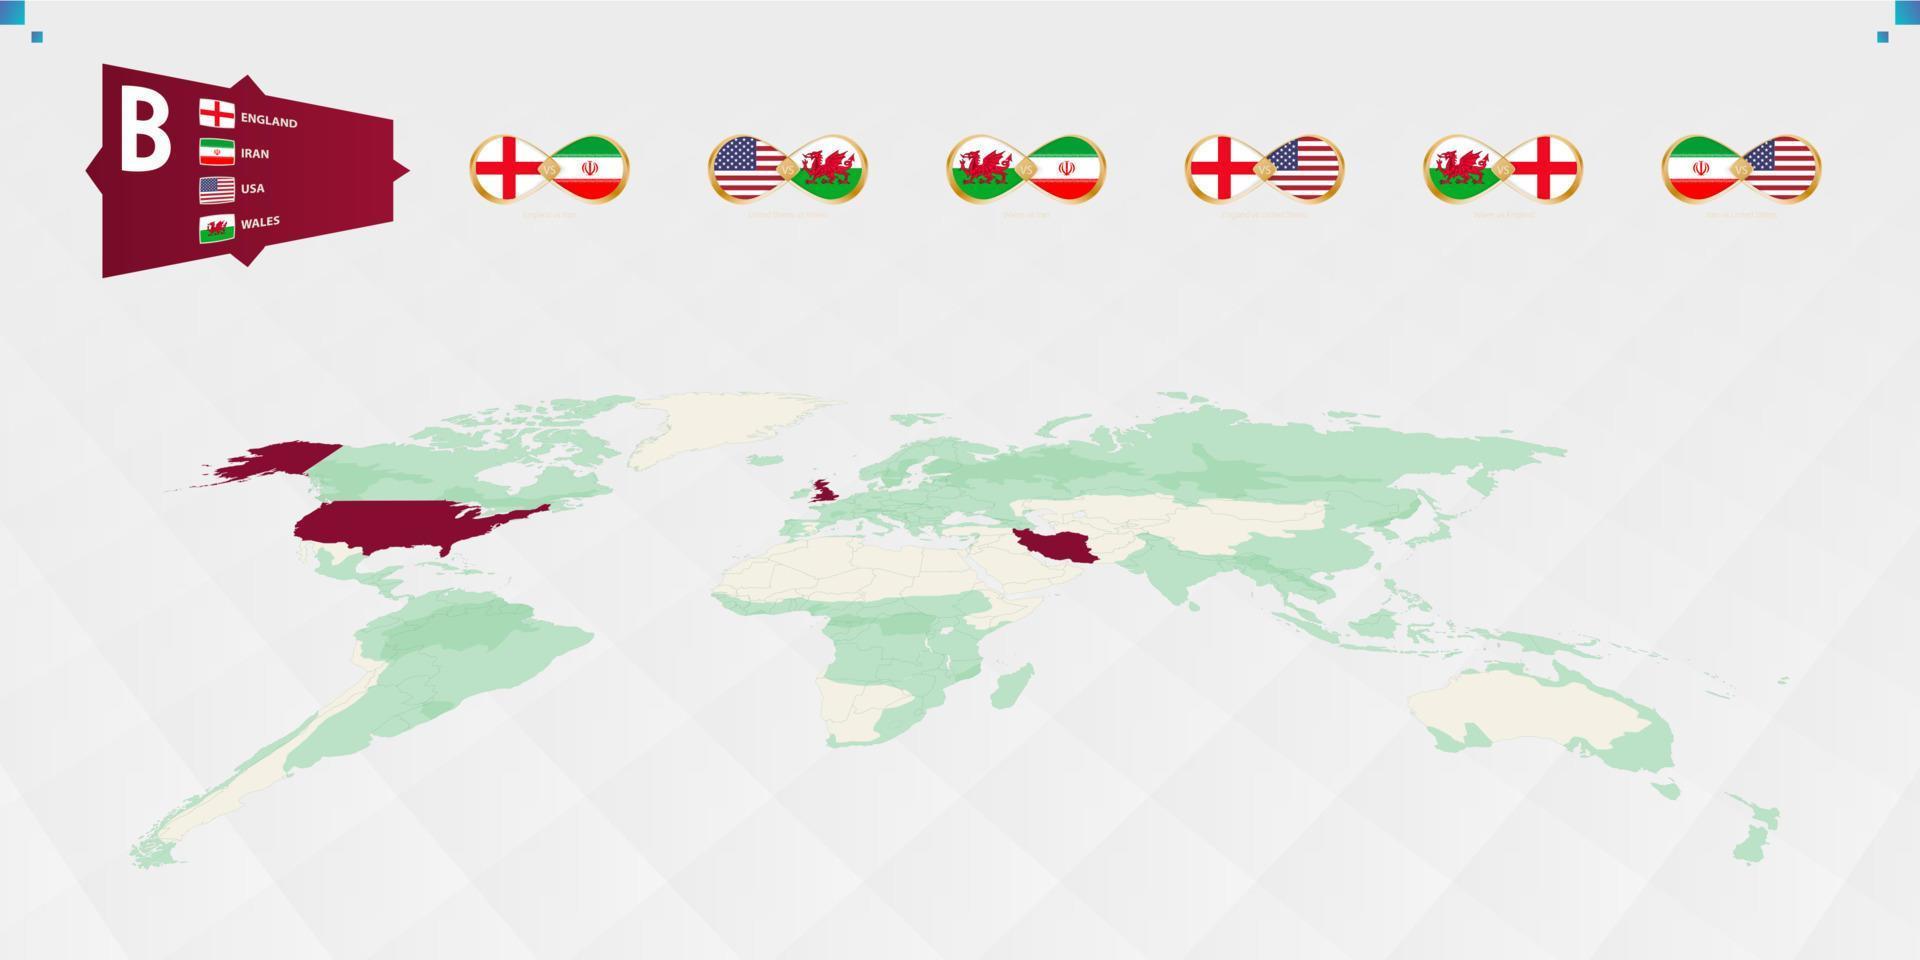 participants du groupe b du tournoi de football, mis en évidence en bordeaux sur la carte du monde. tous les jeux collectifs. vecteur